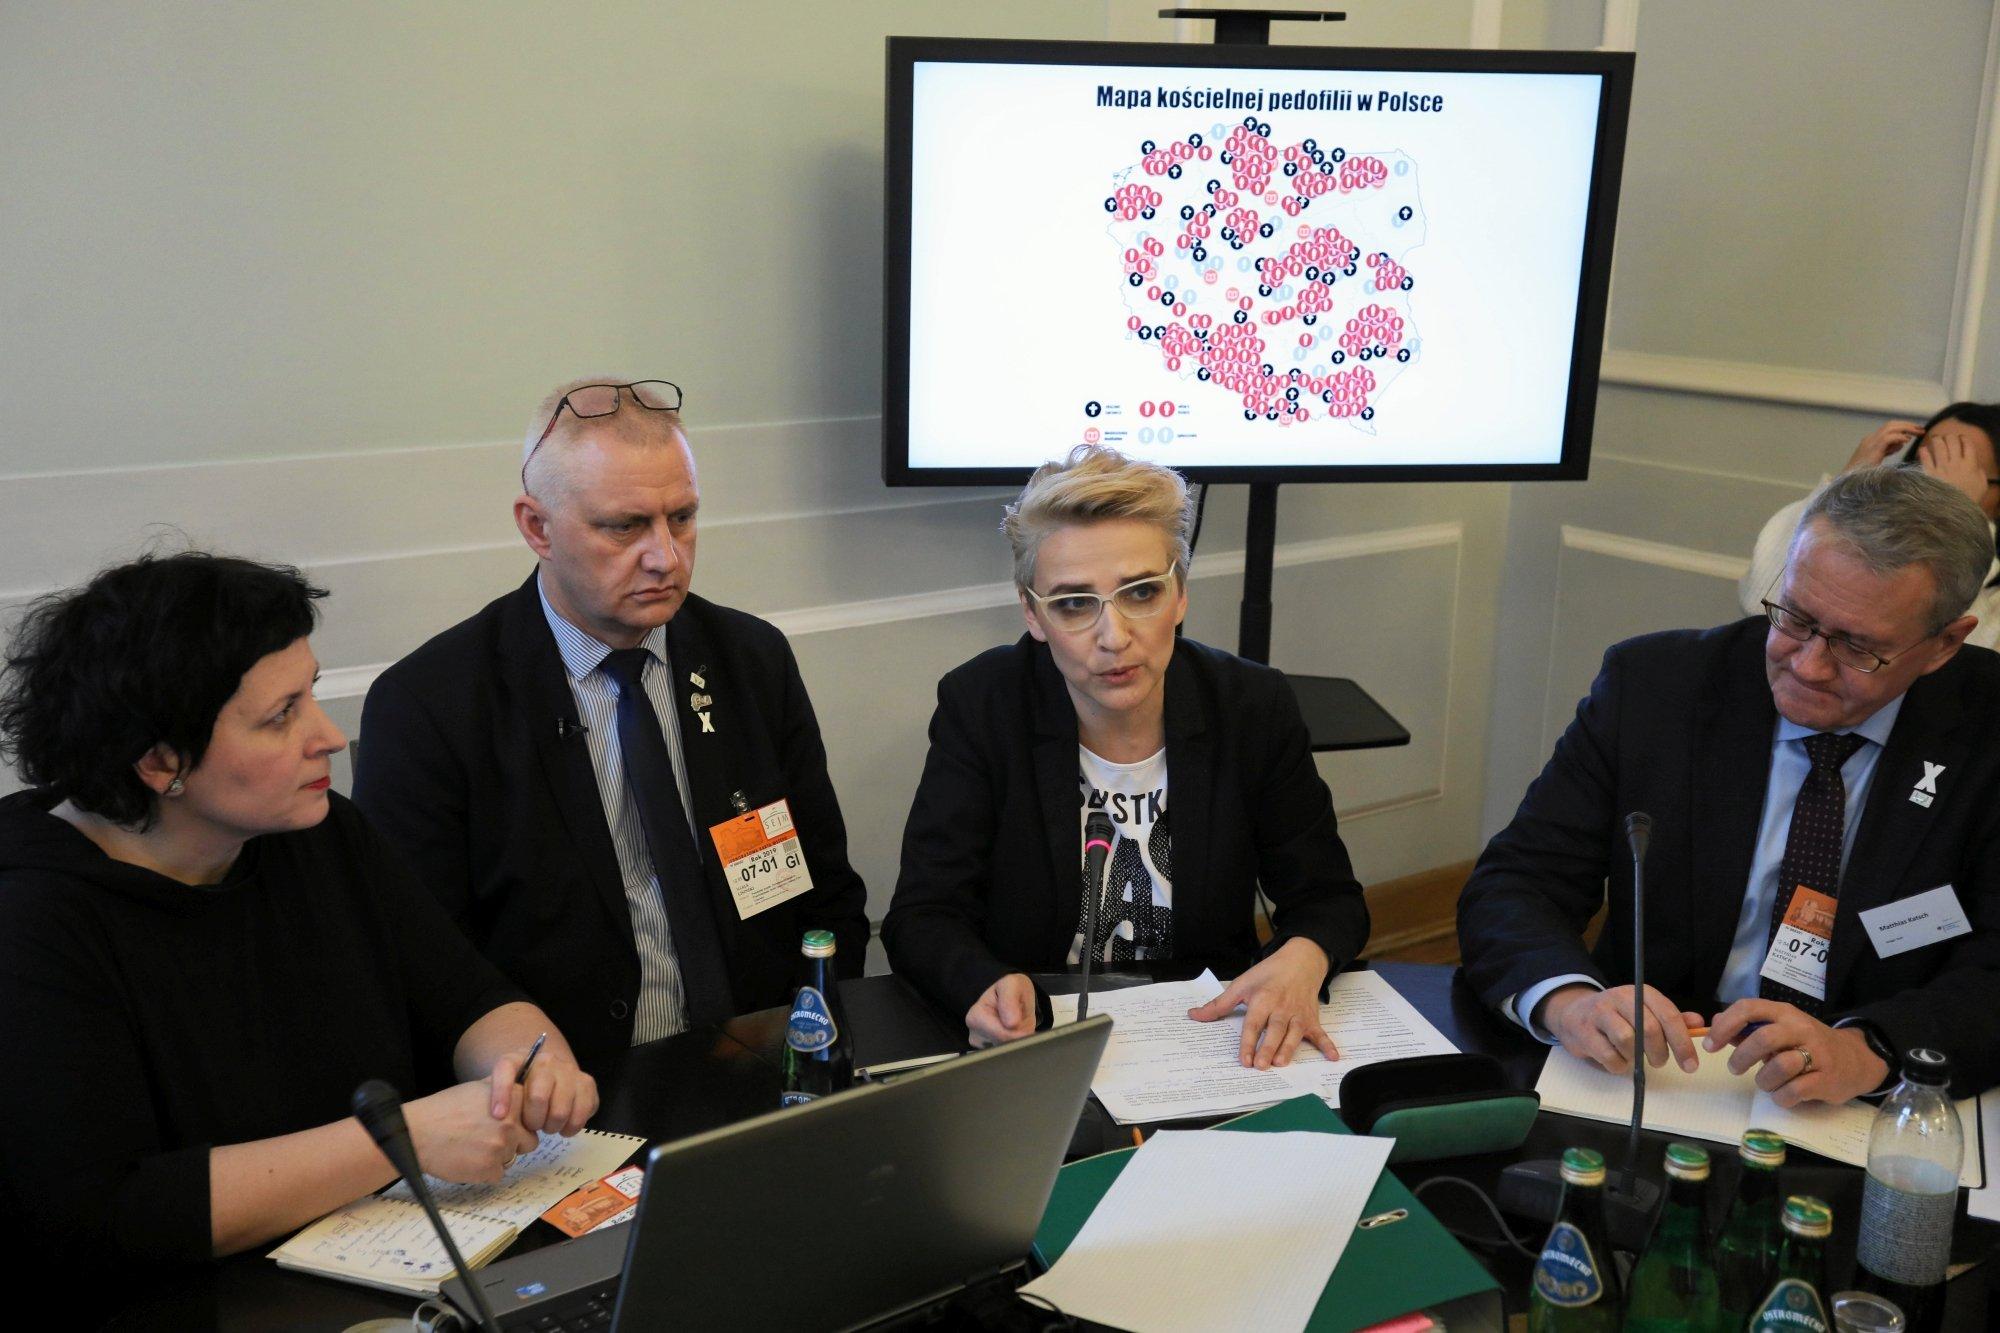 Zdjęcie przedstawia Agatę Diduszko-Zyglewską, Marka Lisińskiego, Joannę Scheuring-Wielgus i Matthiasa Katscha podczas konferencji w Sejmie, na której przedstawiono aktualizację mapy pedofilii w Kościele